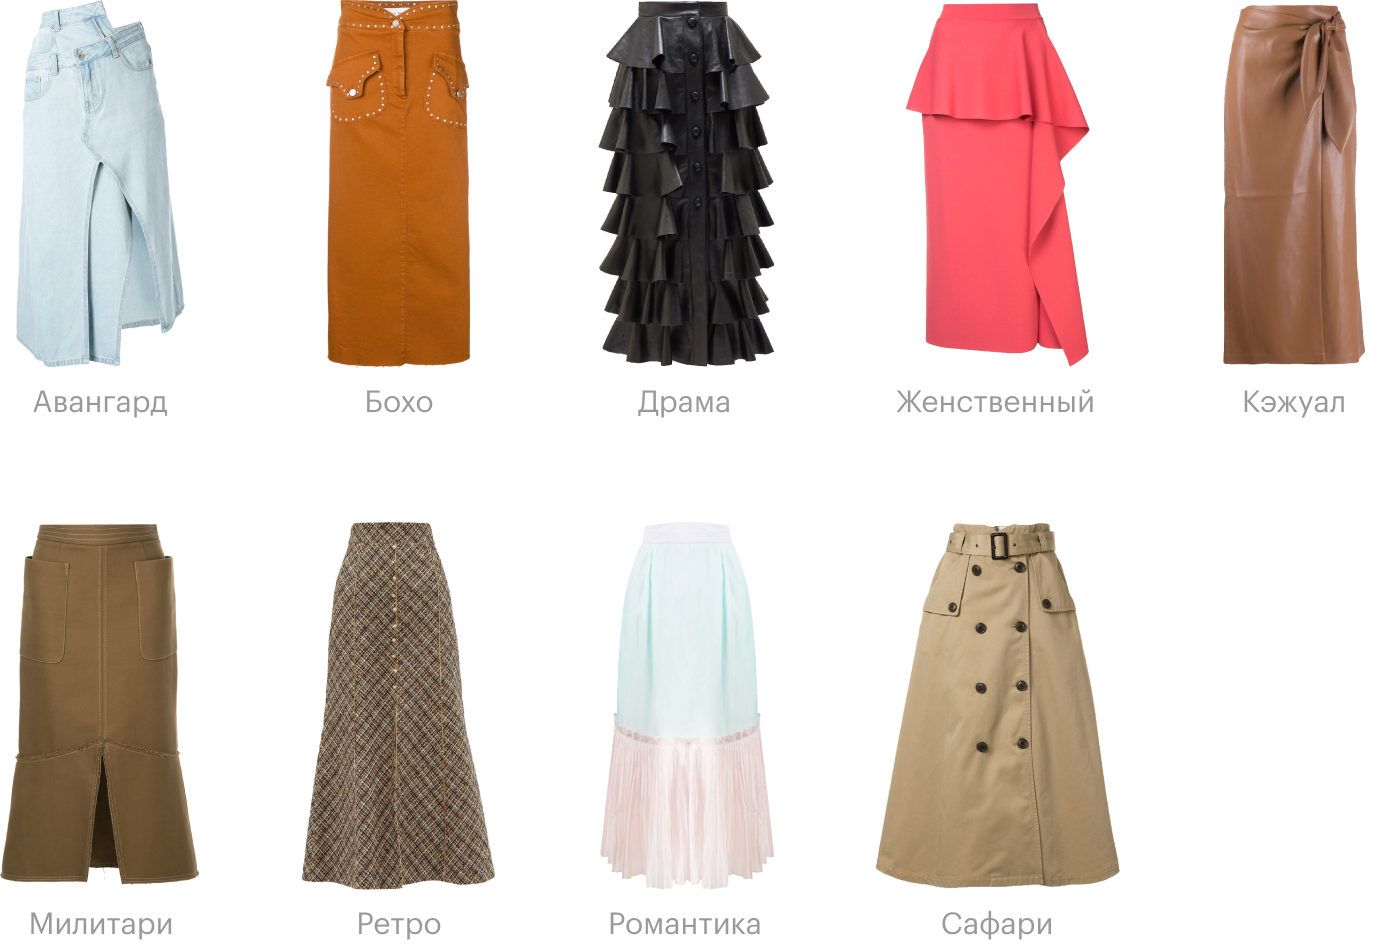 Как проявляются разные стили на примере одной юбки